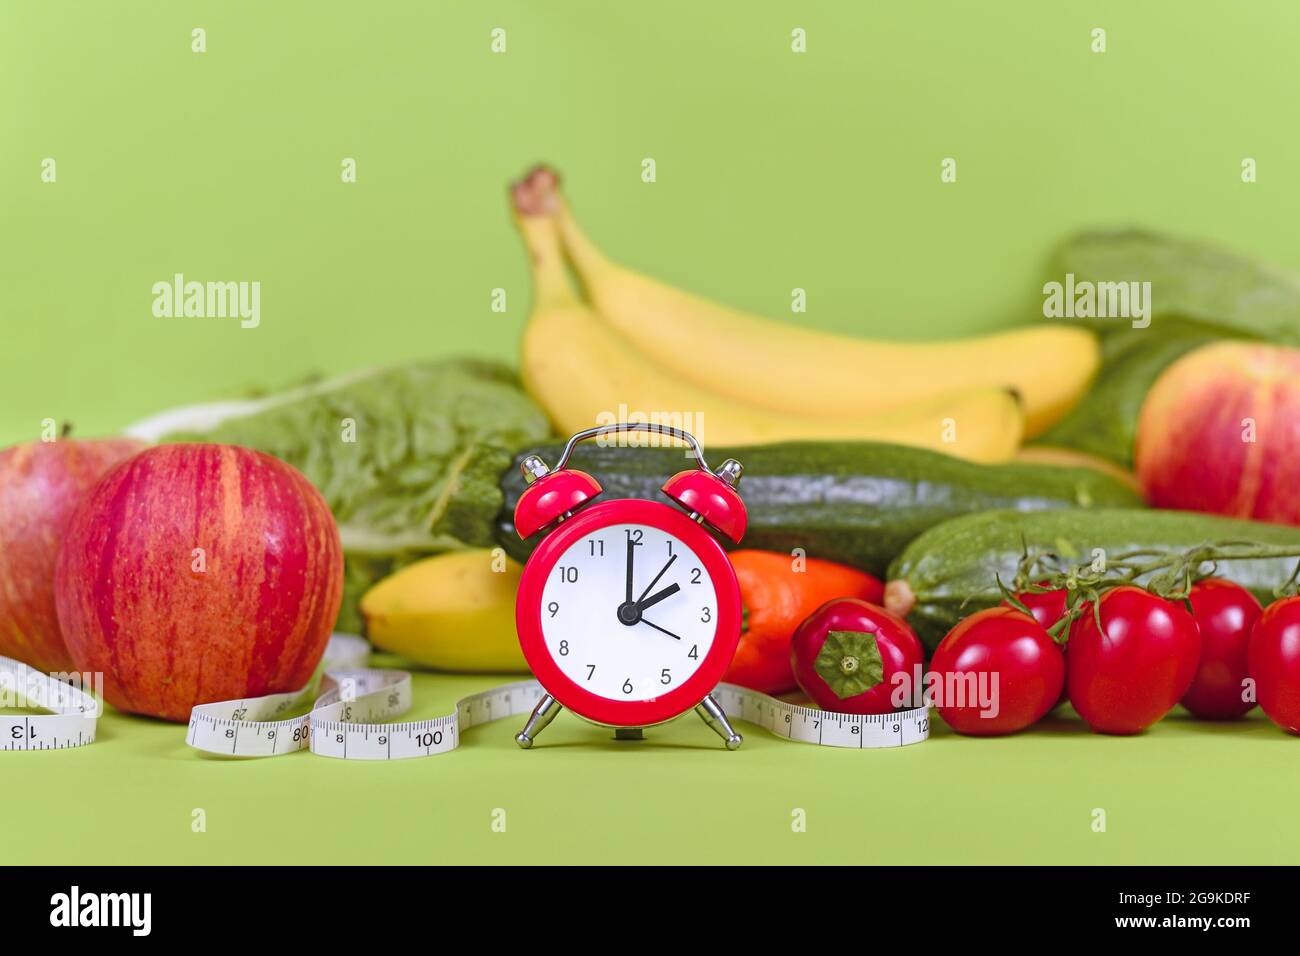 Diät-Konzept zum Abnehmen mit nur gesunde Ernährung zu bestimmten Zeiten mit Gemüse, Obst, Maßband und Uhr Stockfoto